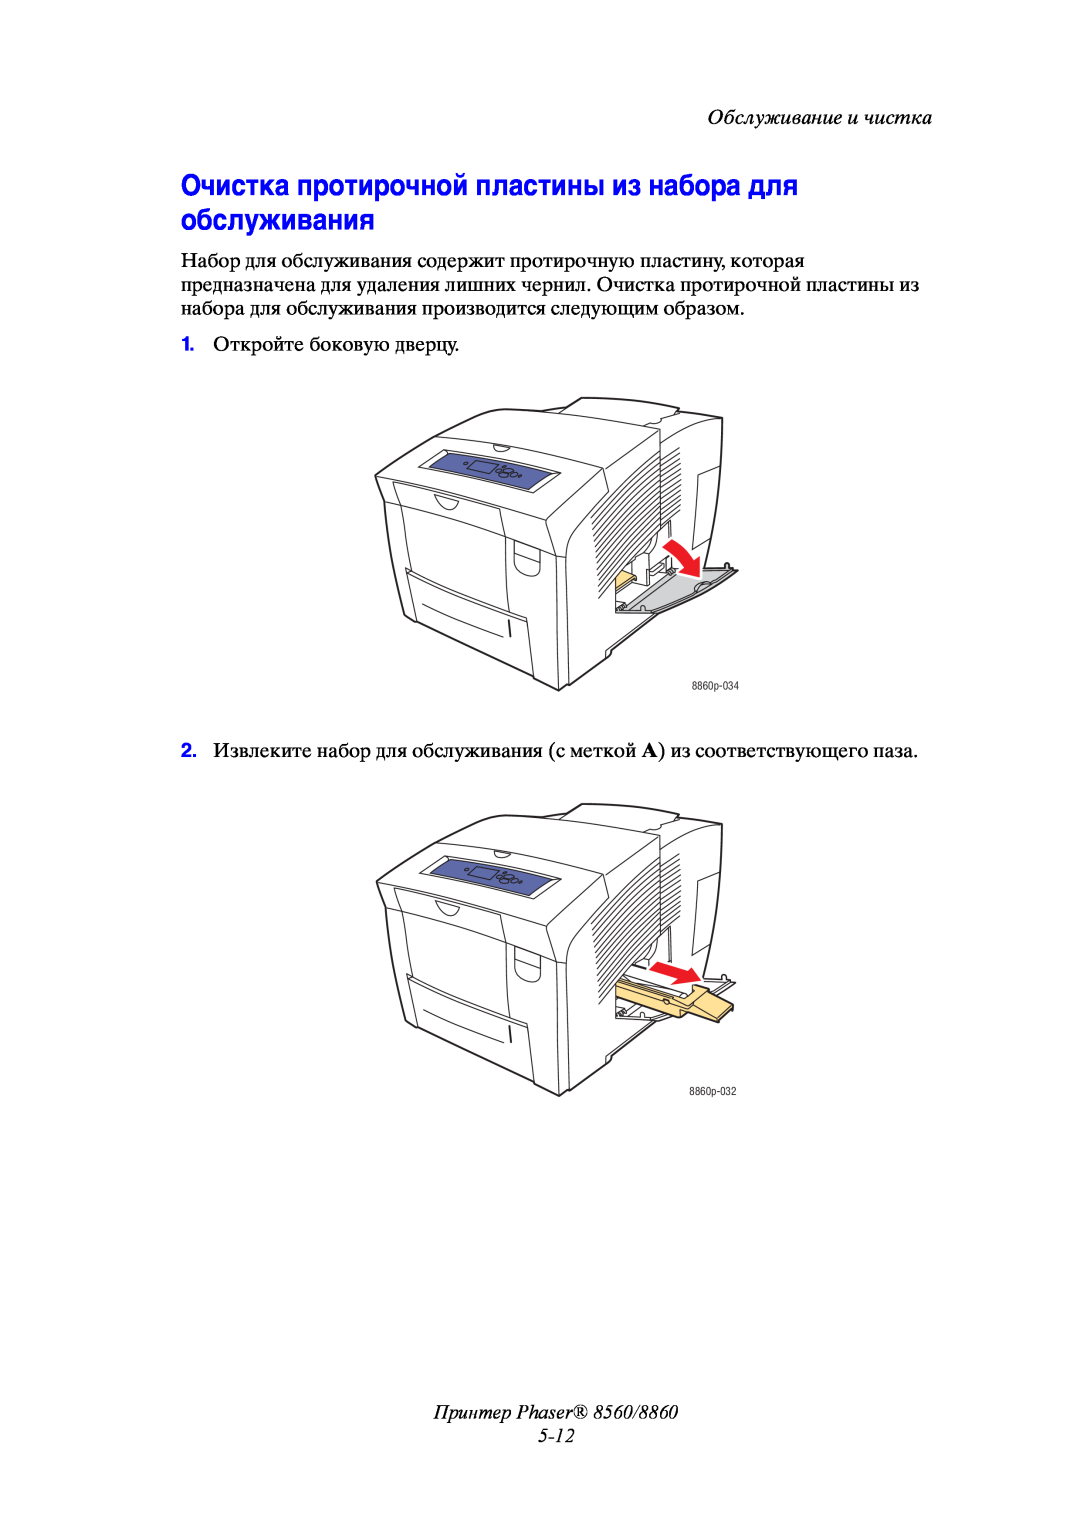 Xerox Очистка протирочной пластины из набора для обслуживания, Принтер Phaser 8560/8860 5-12, Обслуживание и чистка 